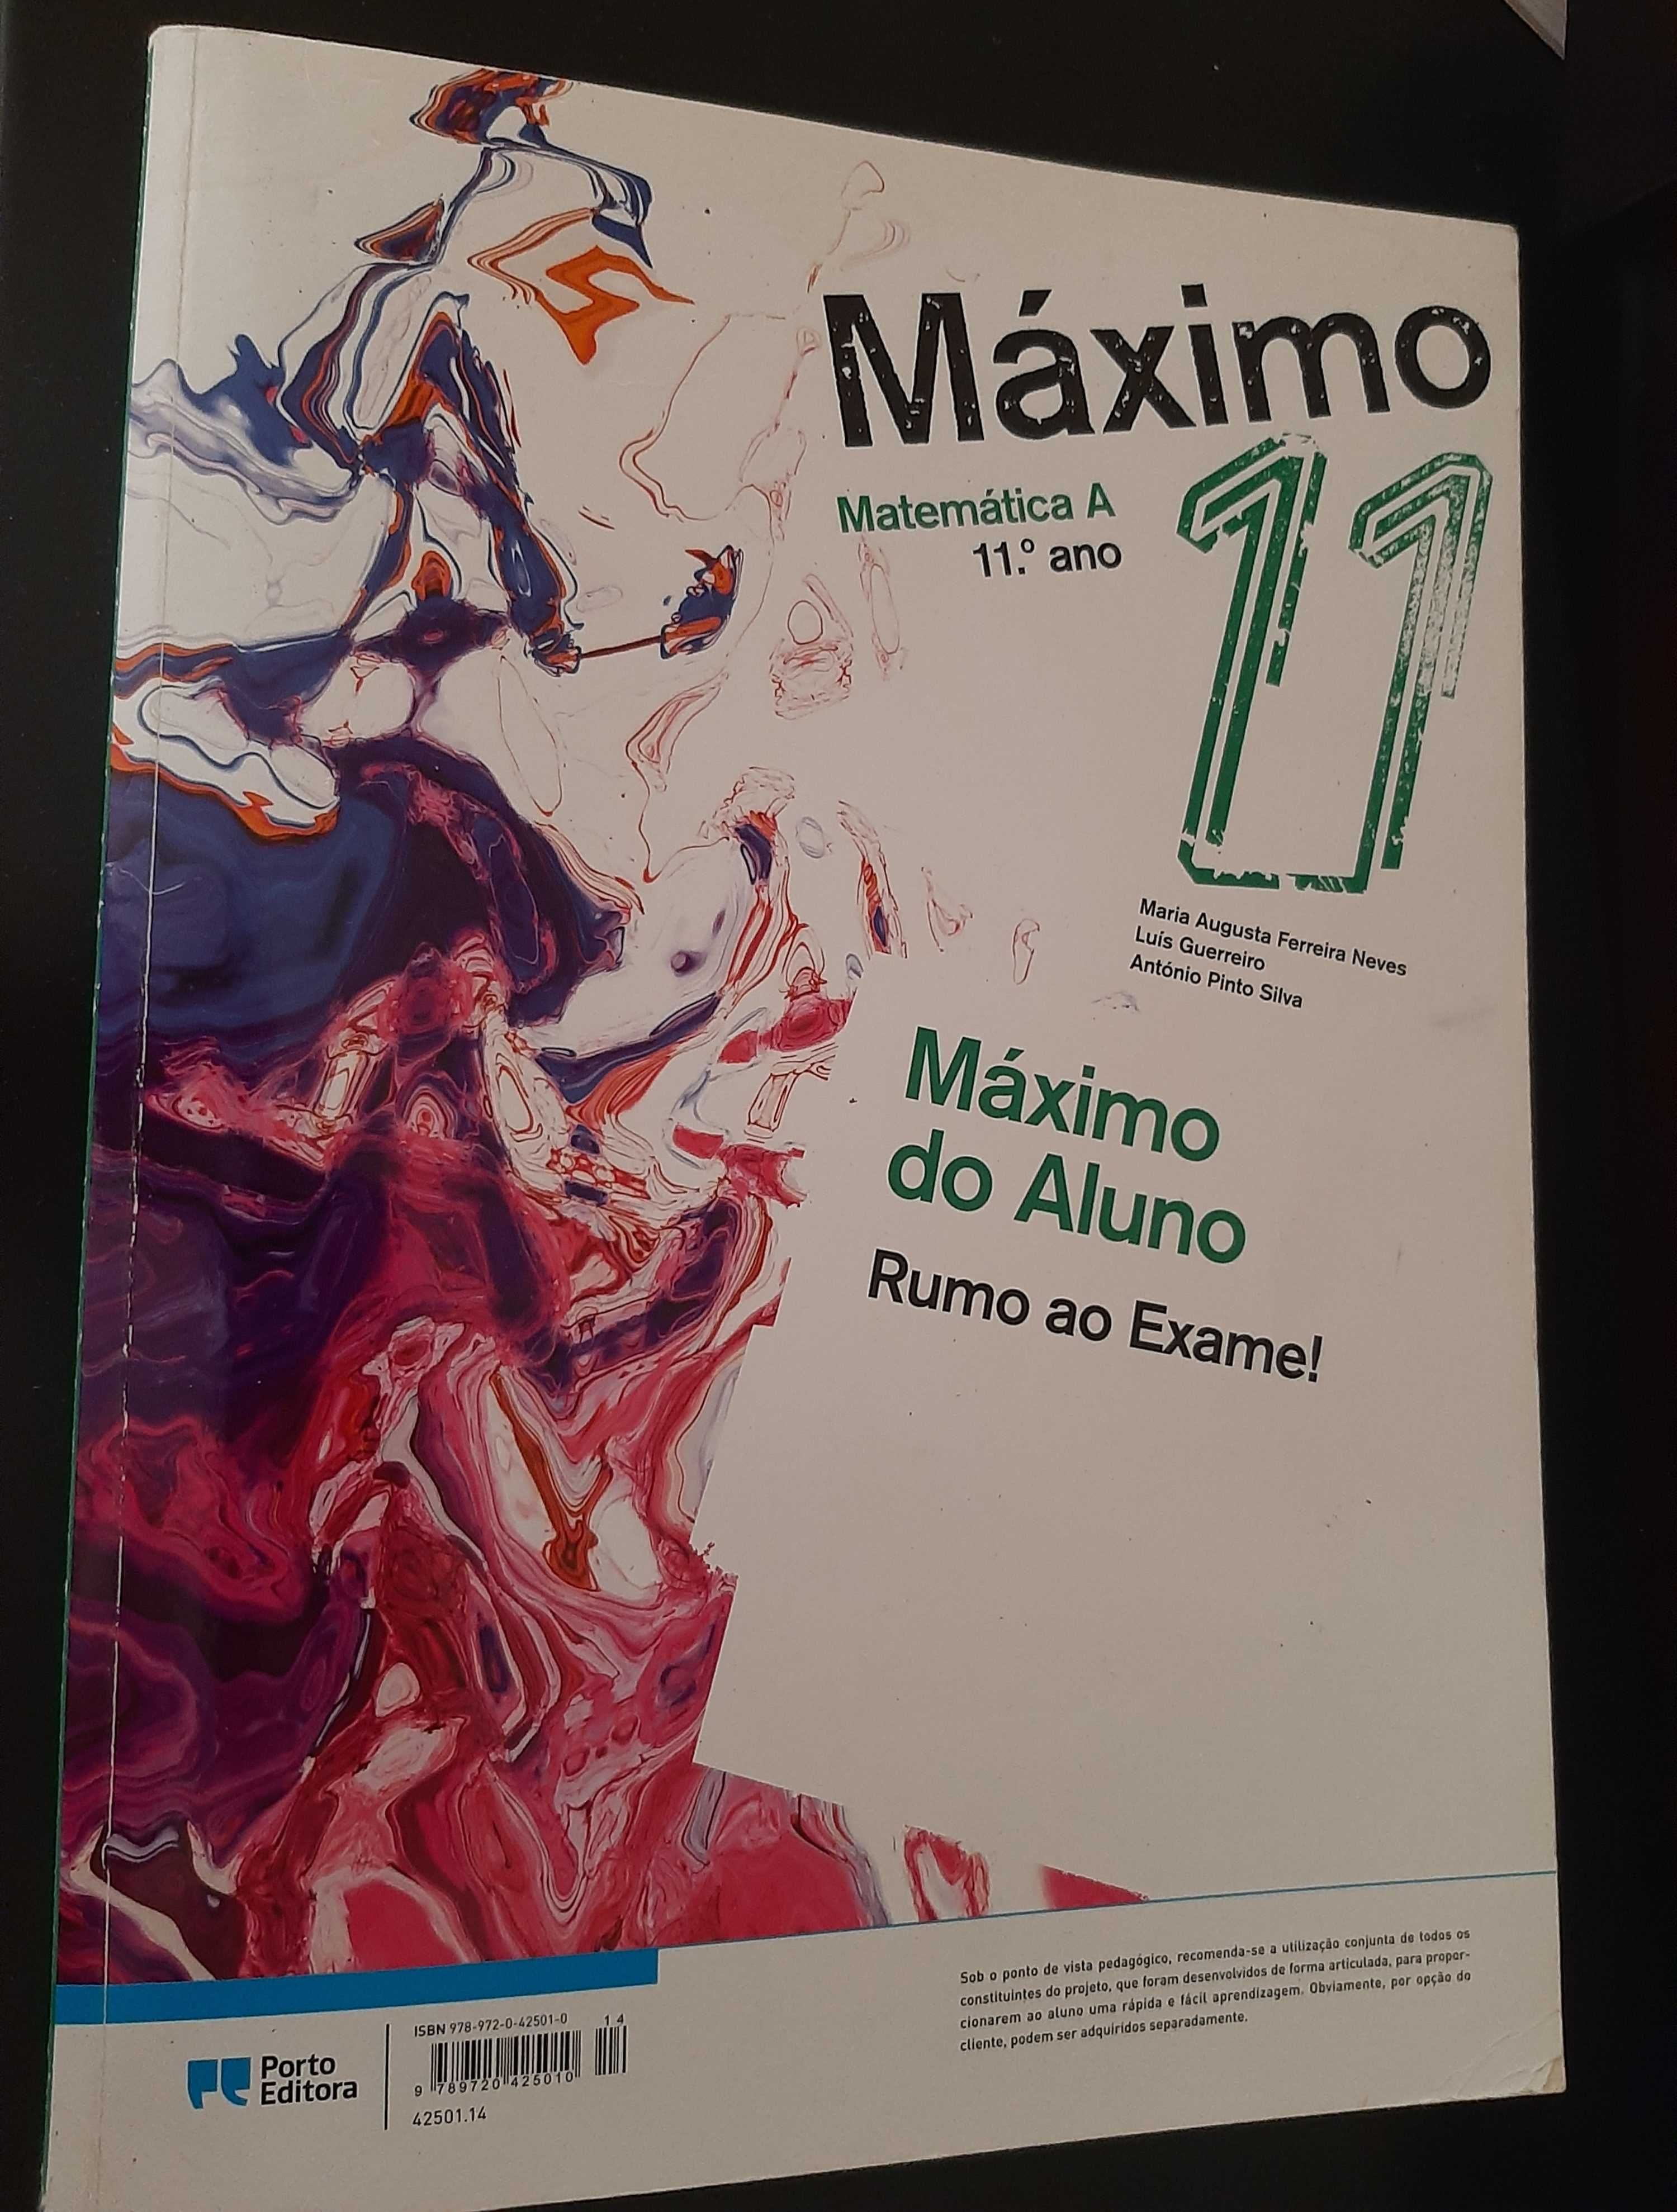 Caderno de Fichas - Matemática A 11º ano